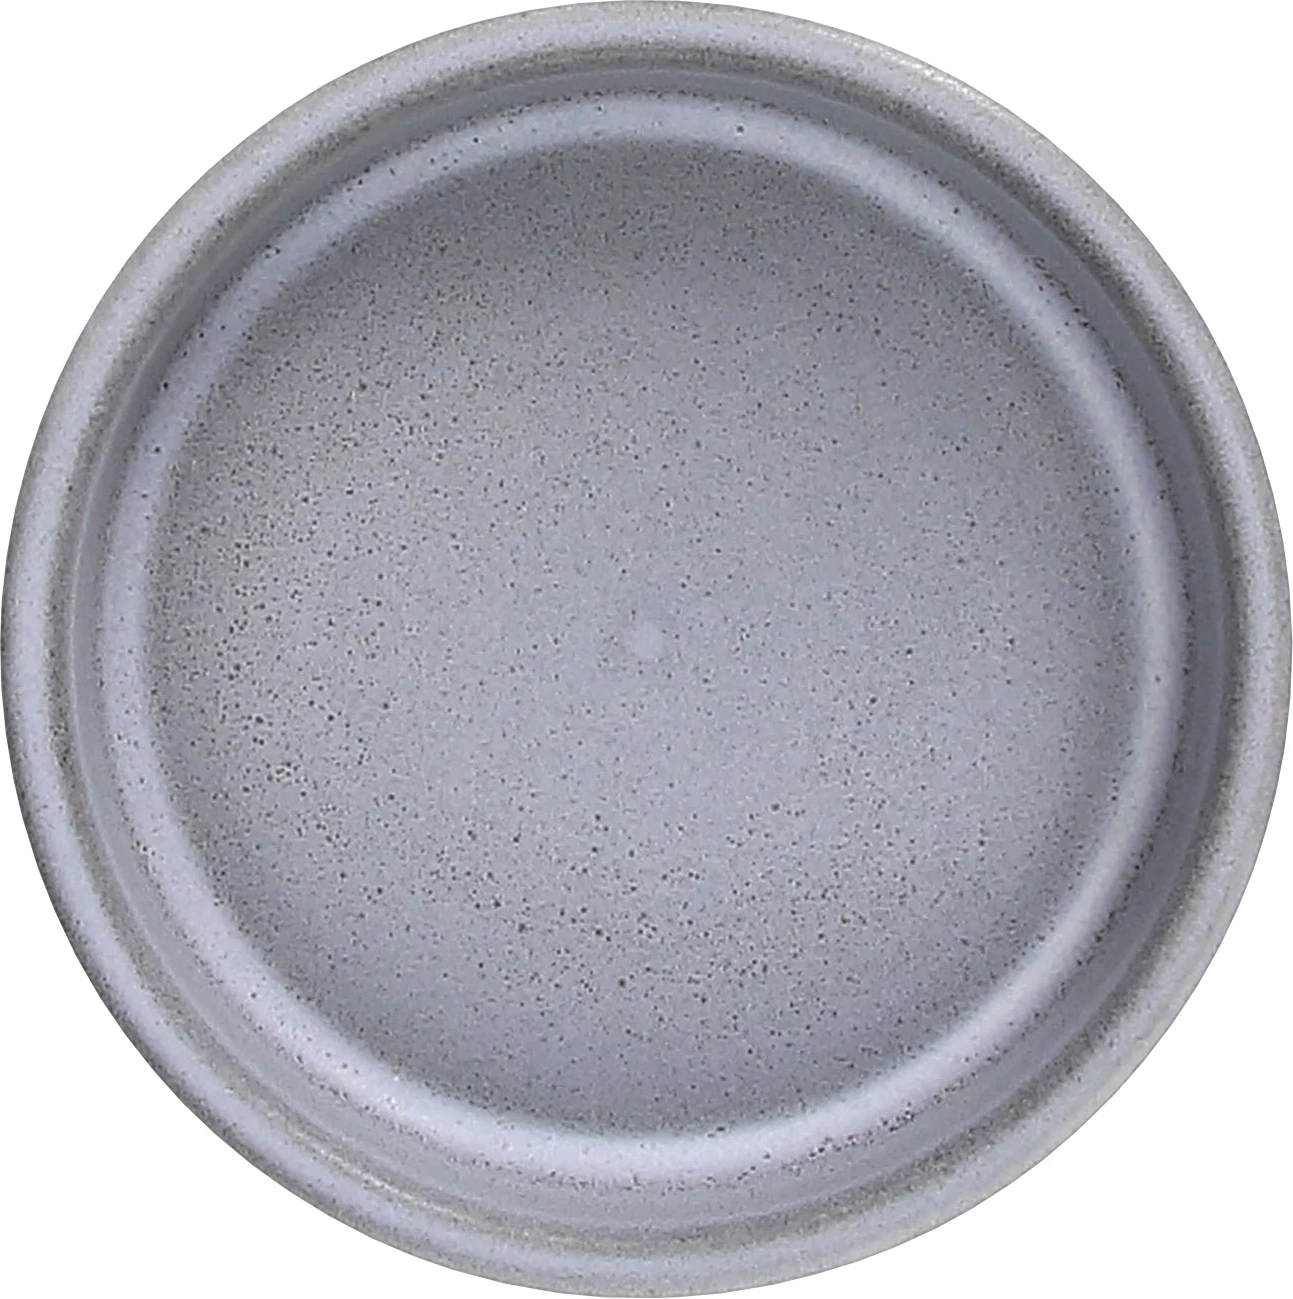 Tognana Terracotta skål, lav, grå, 32 cl, ø15 cm